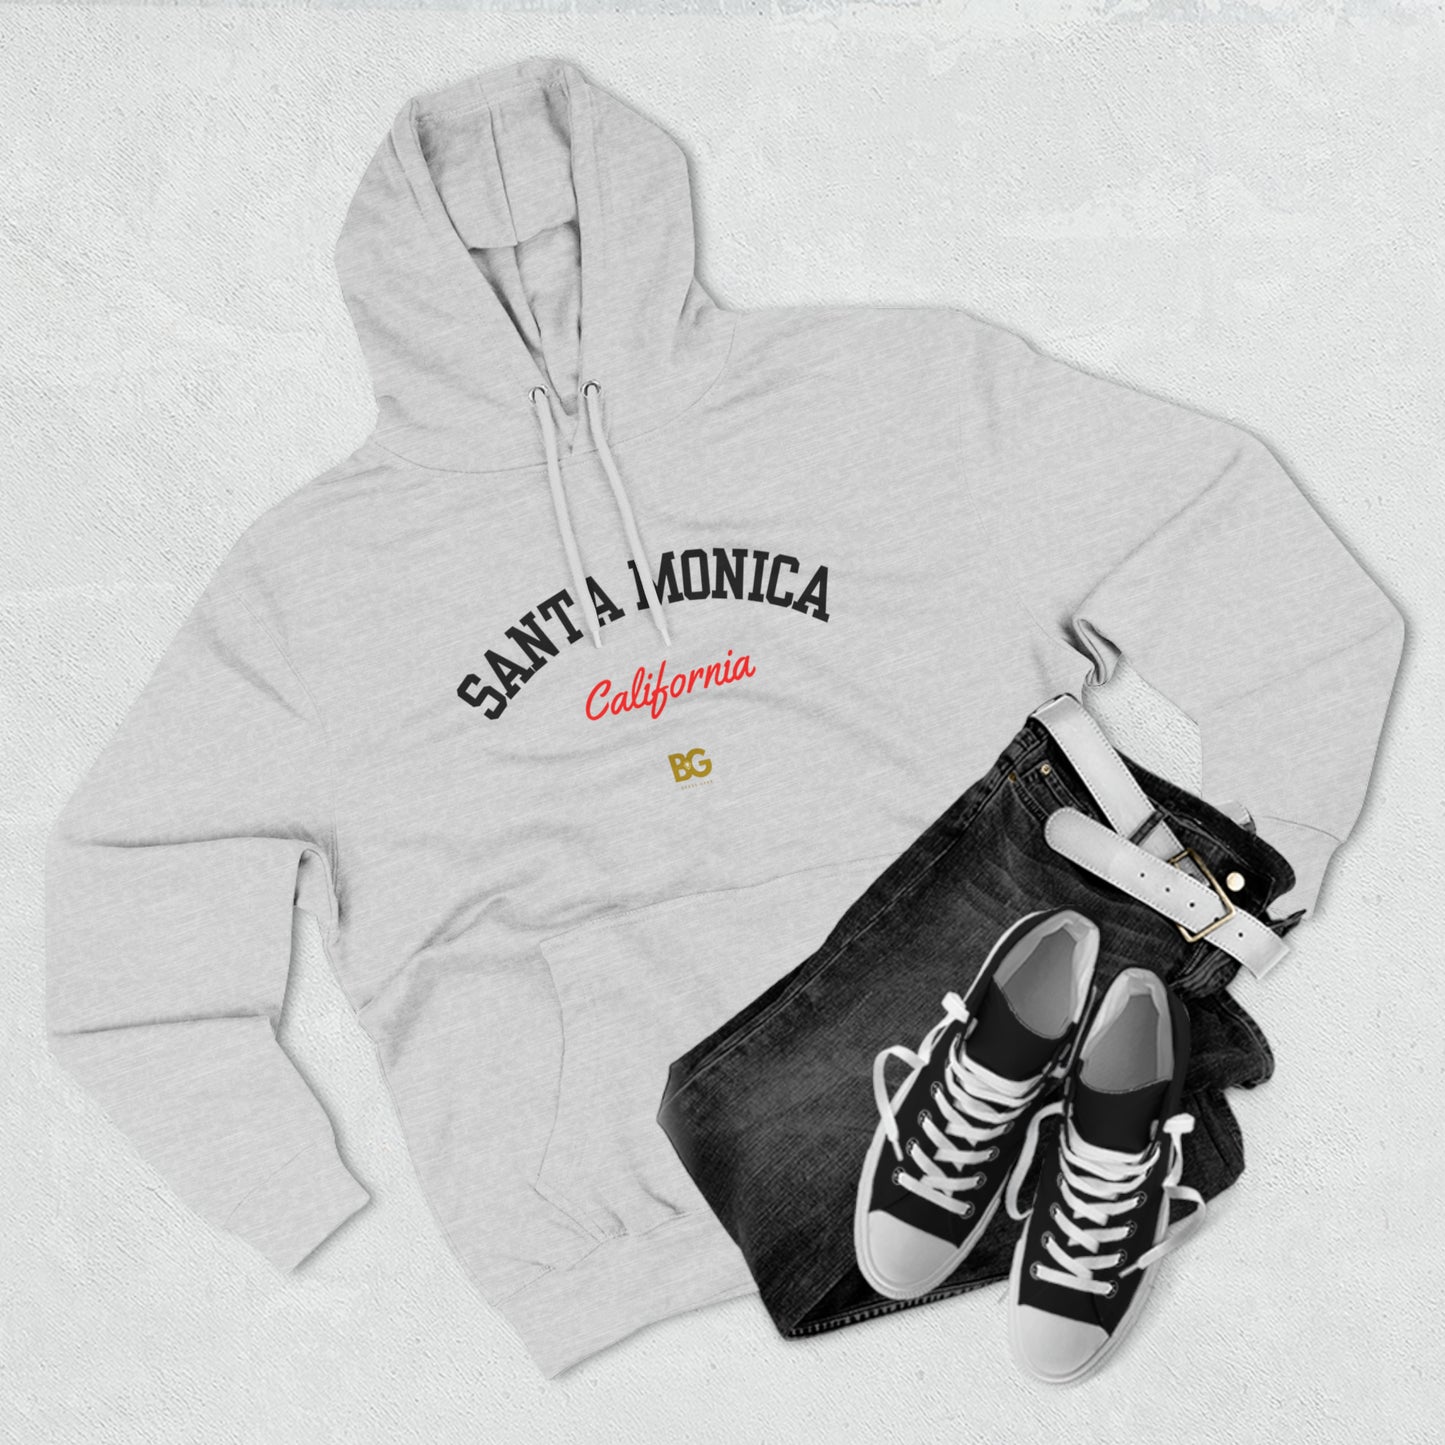 BG "Santa Monica California" Premium Pullover Hoodie